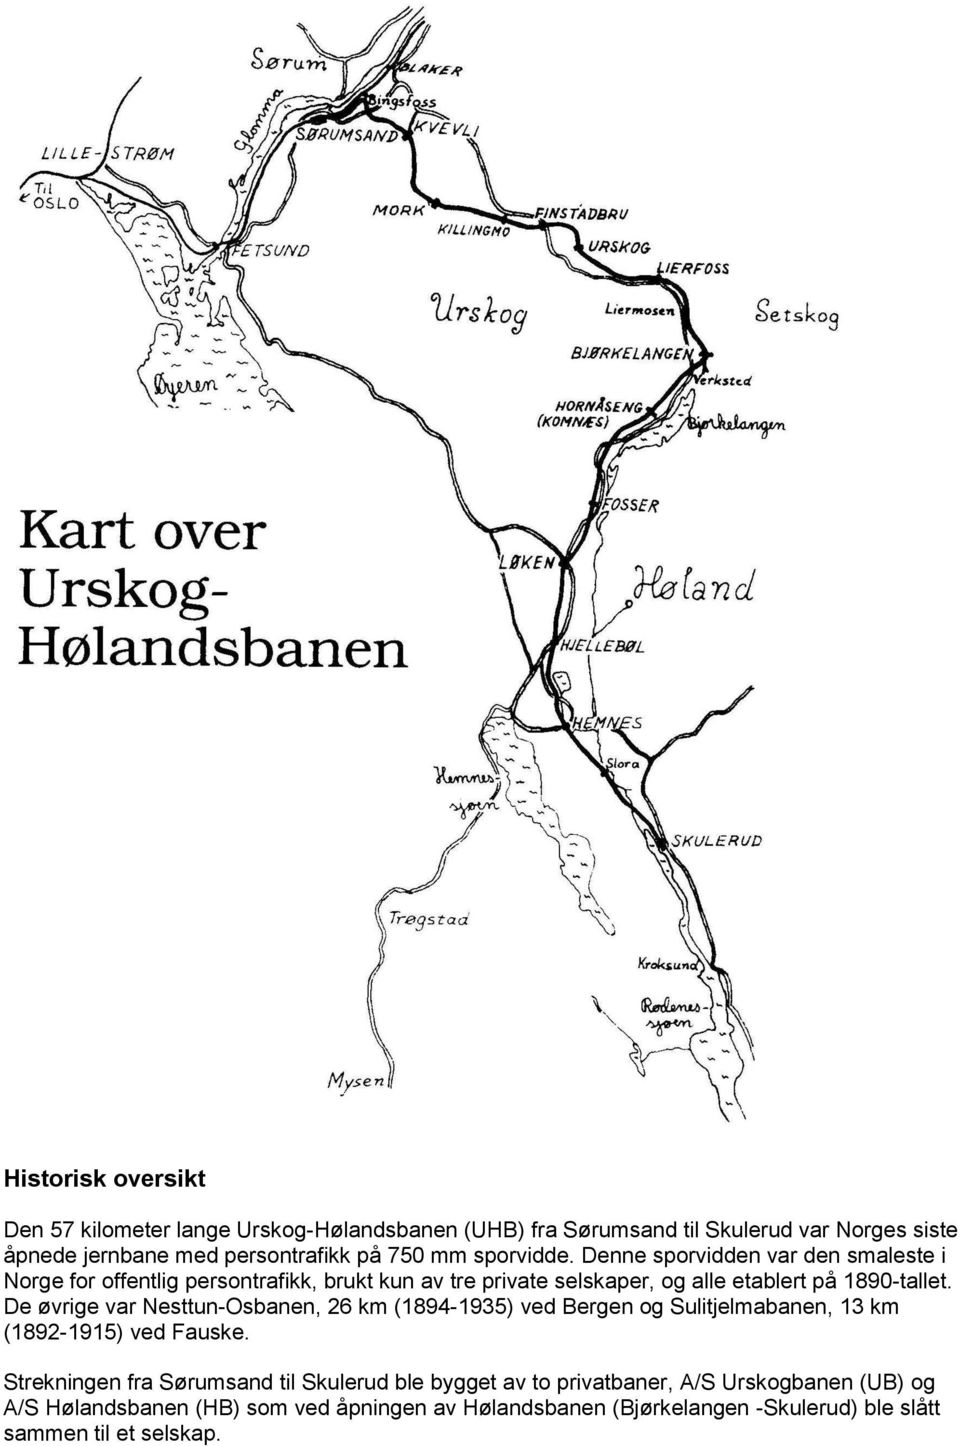 De øvrige var Nesttun-Osbanen, 26 km (1894-1935) ved Bergen og Sulitjelmabanen, 13 km (1892-1915) ved Fauske.